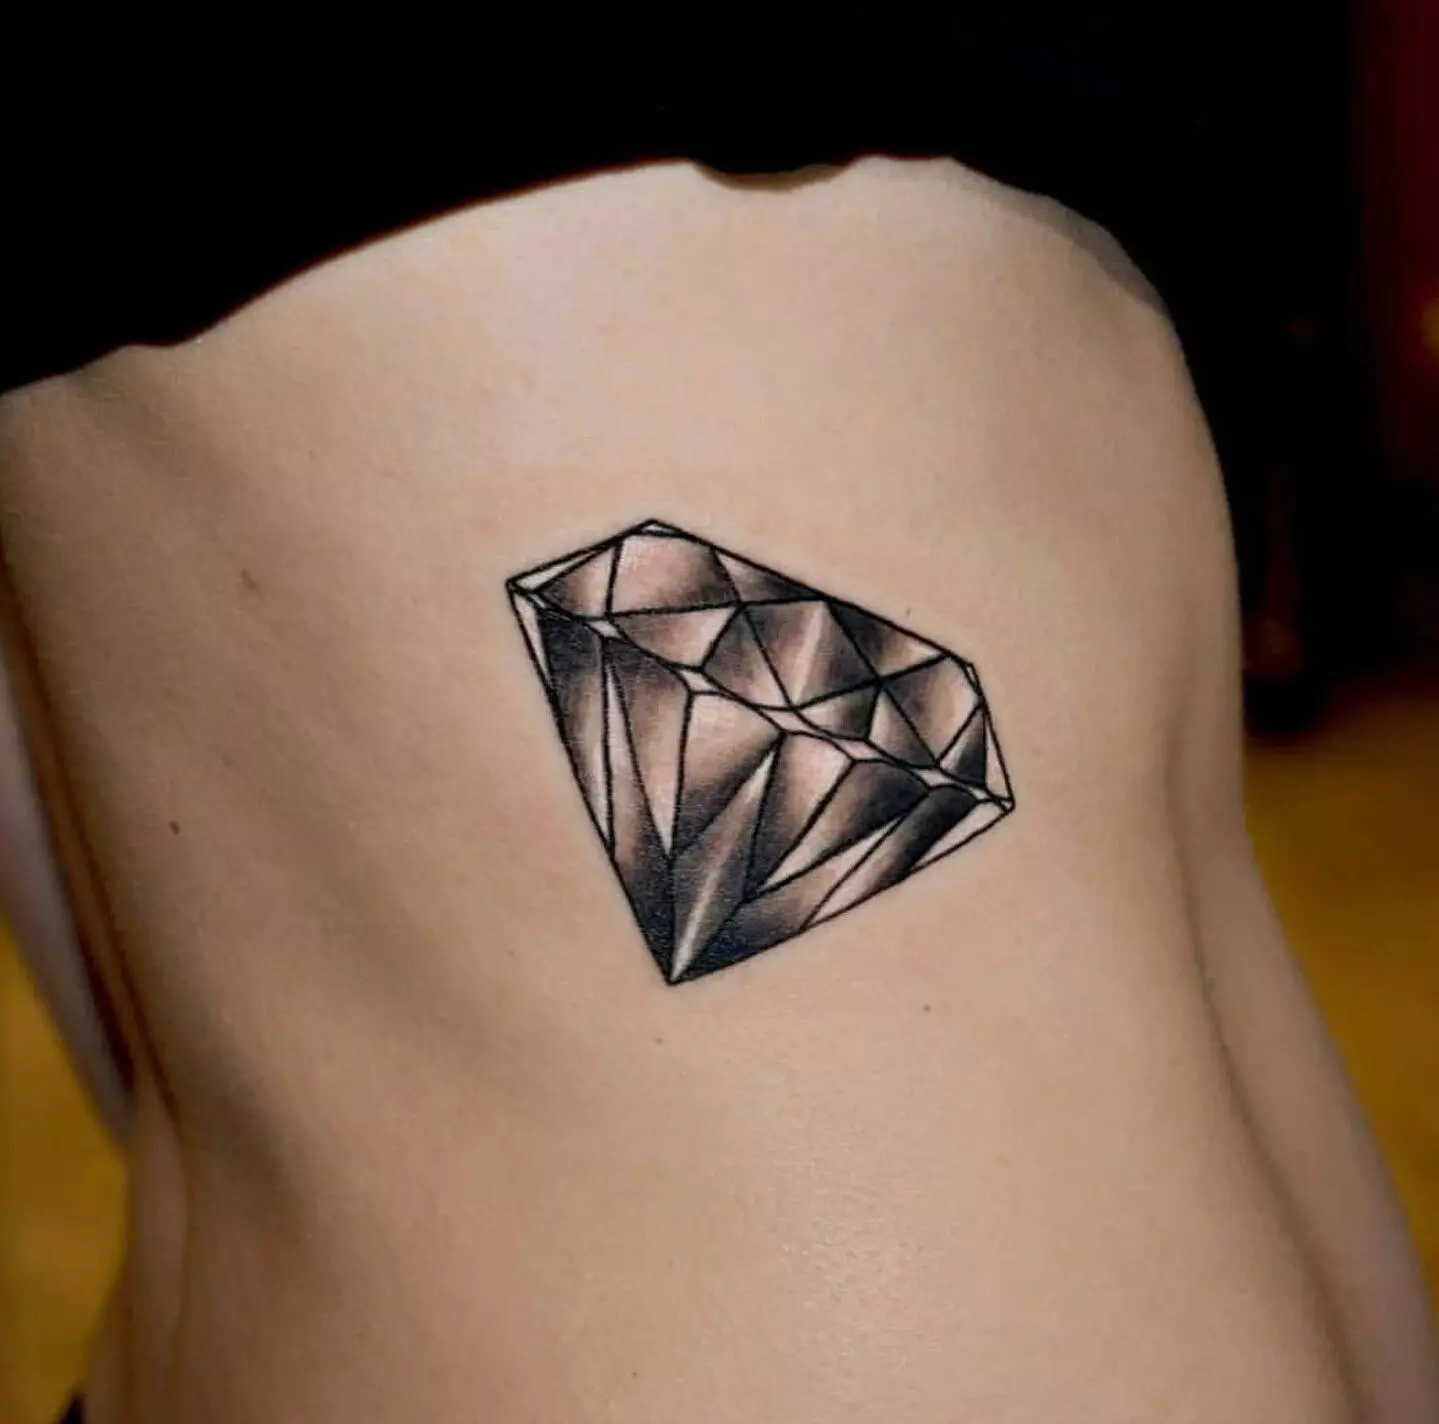 Tatuaggio in cristallo: schizzi e valore del tatuaggio cristallino, i migliori piani per l'applicazione 13764_10